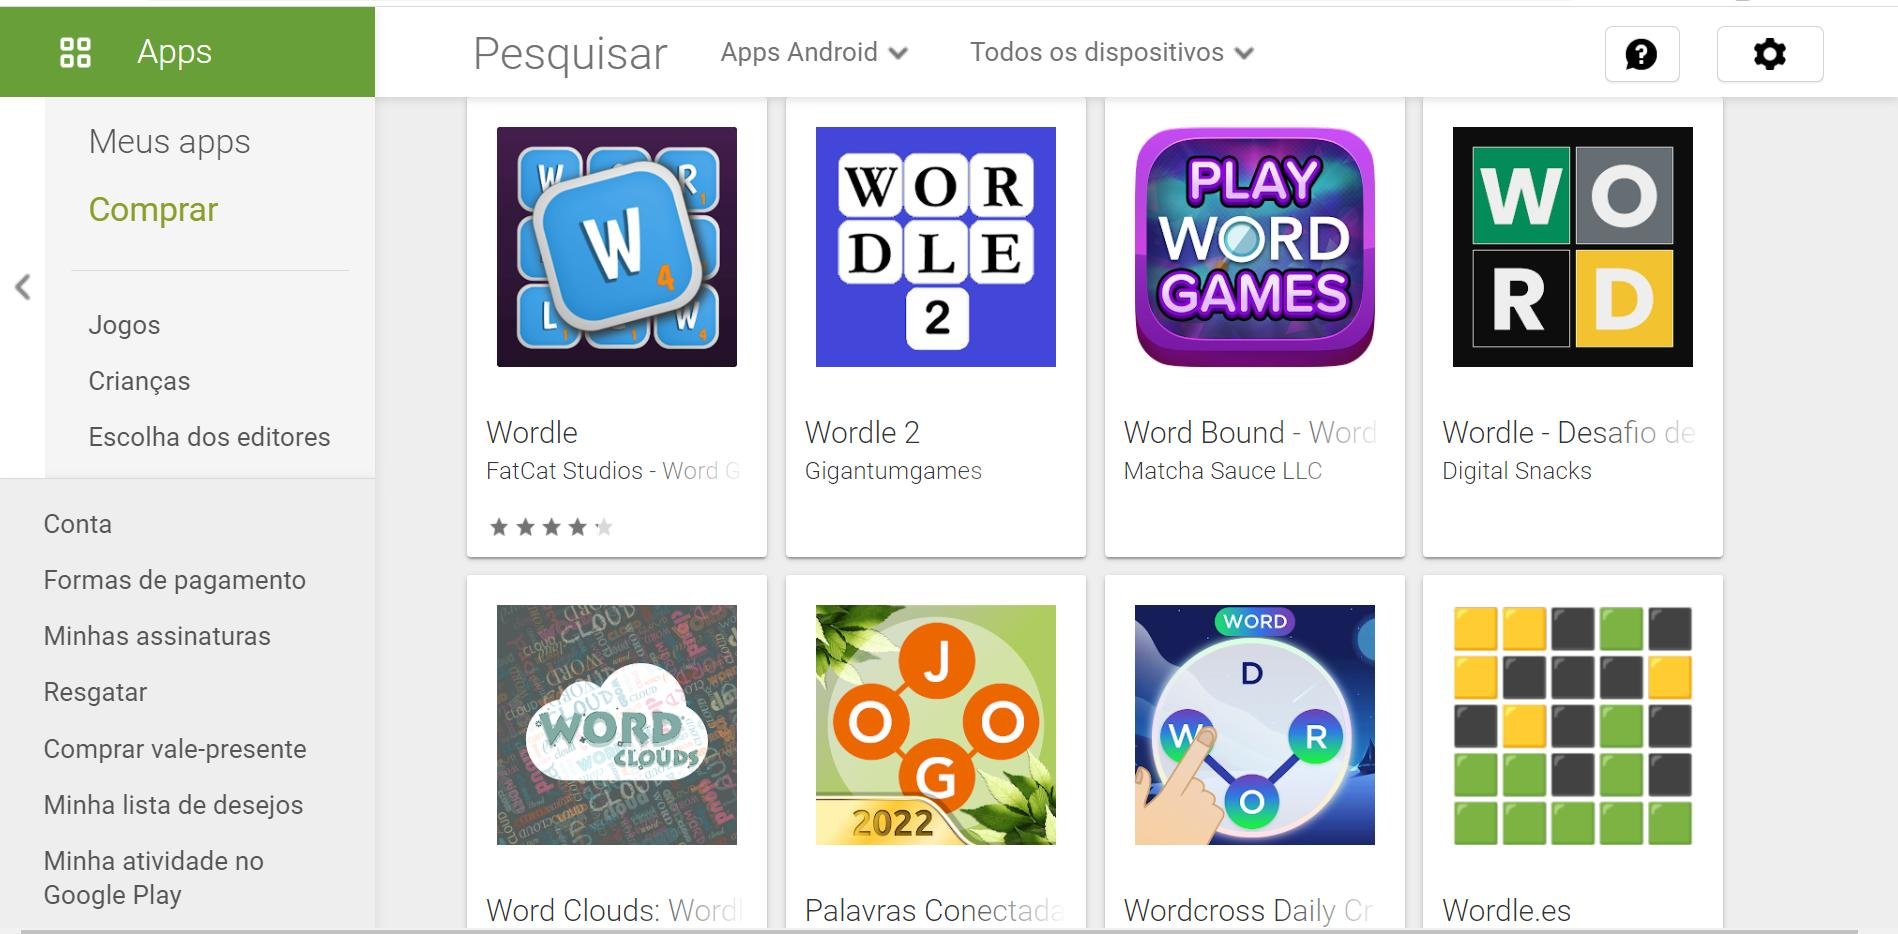 Wordle: conheça o jogo que virou moda em redes sociais - TecMundo